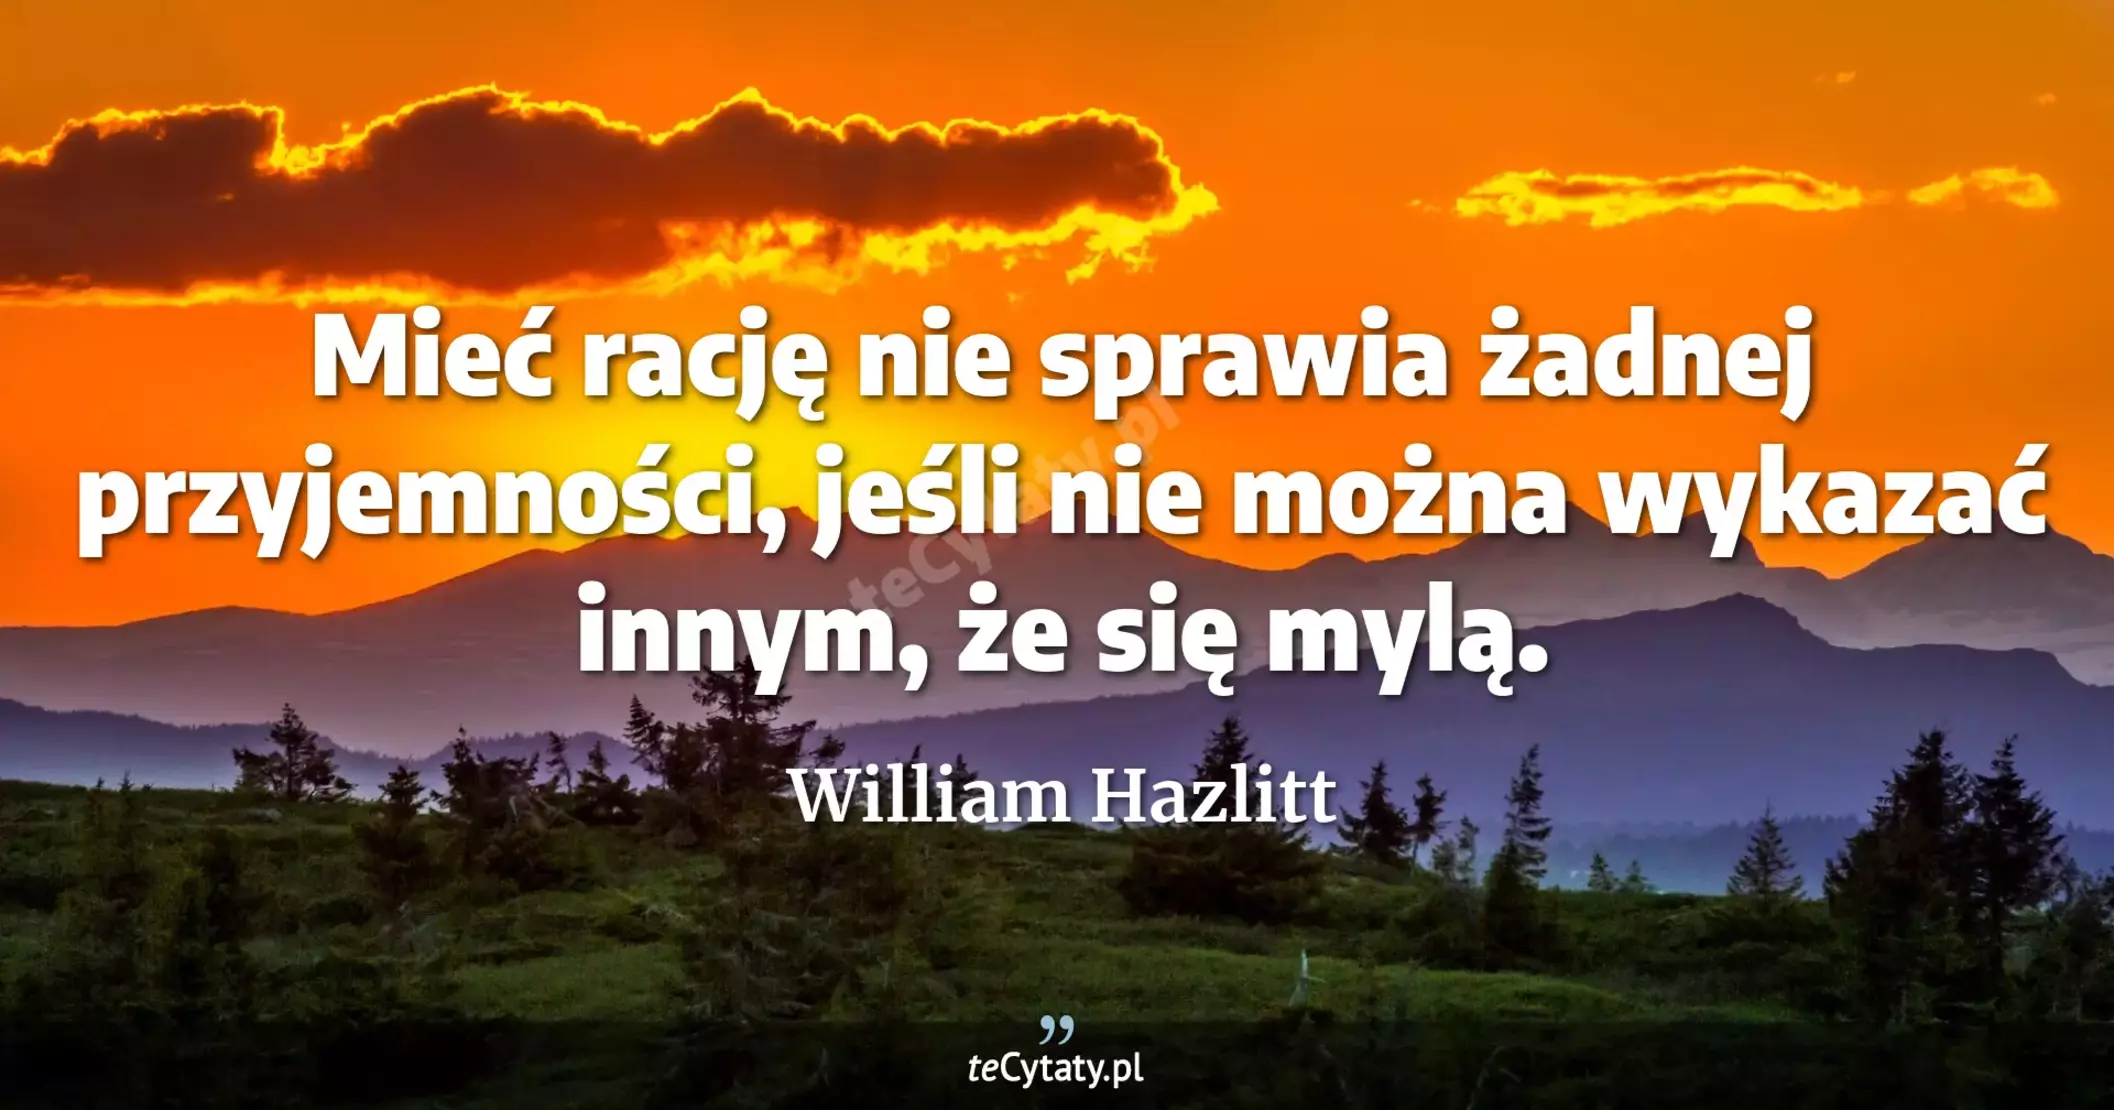 Mieć rację nie sprawia żadnej przyjemności, jeśli nie można wykazać innym, że się mylą. - William Hazlitt